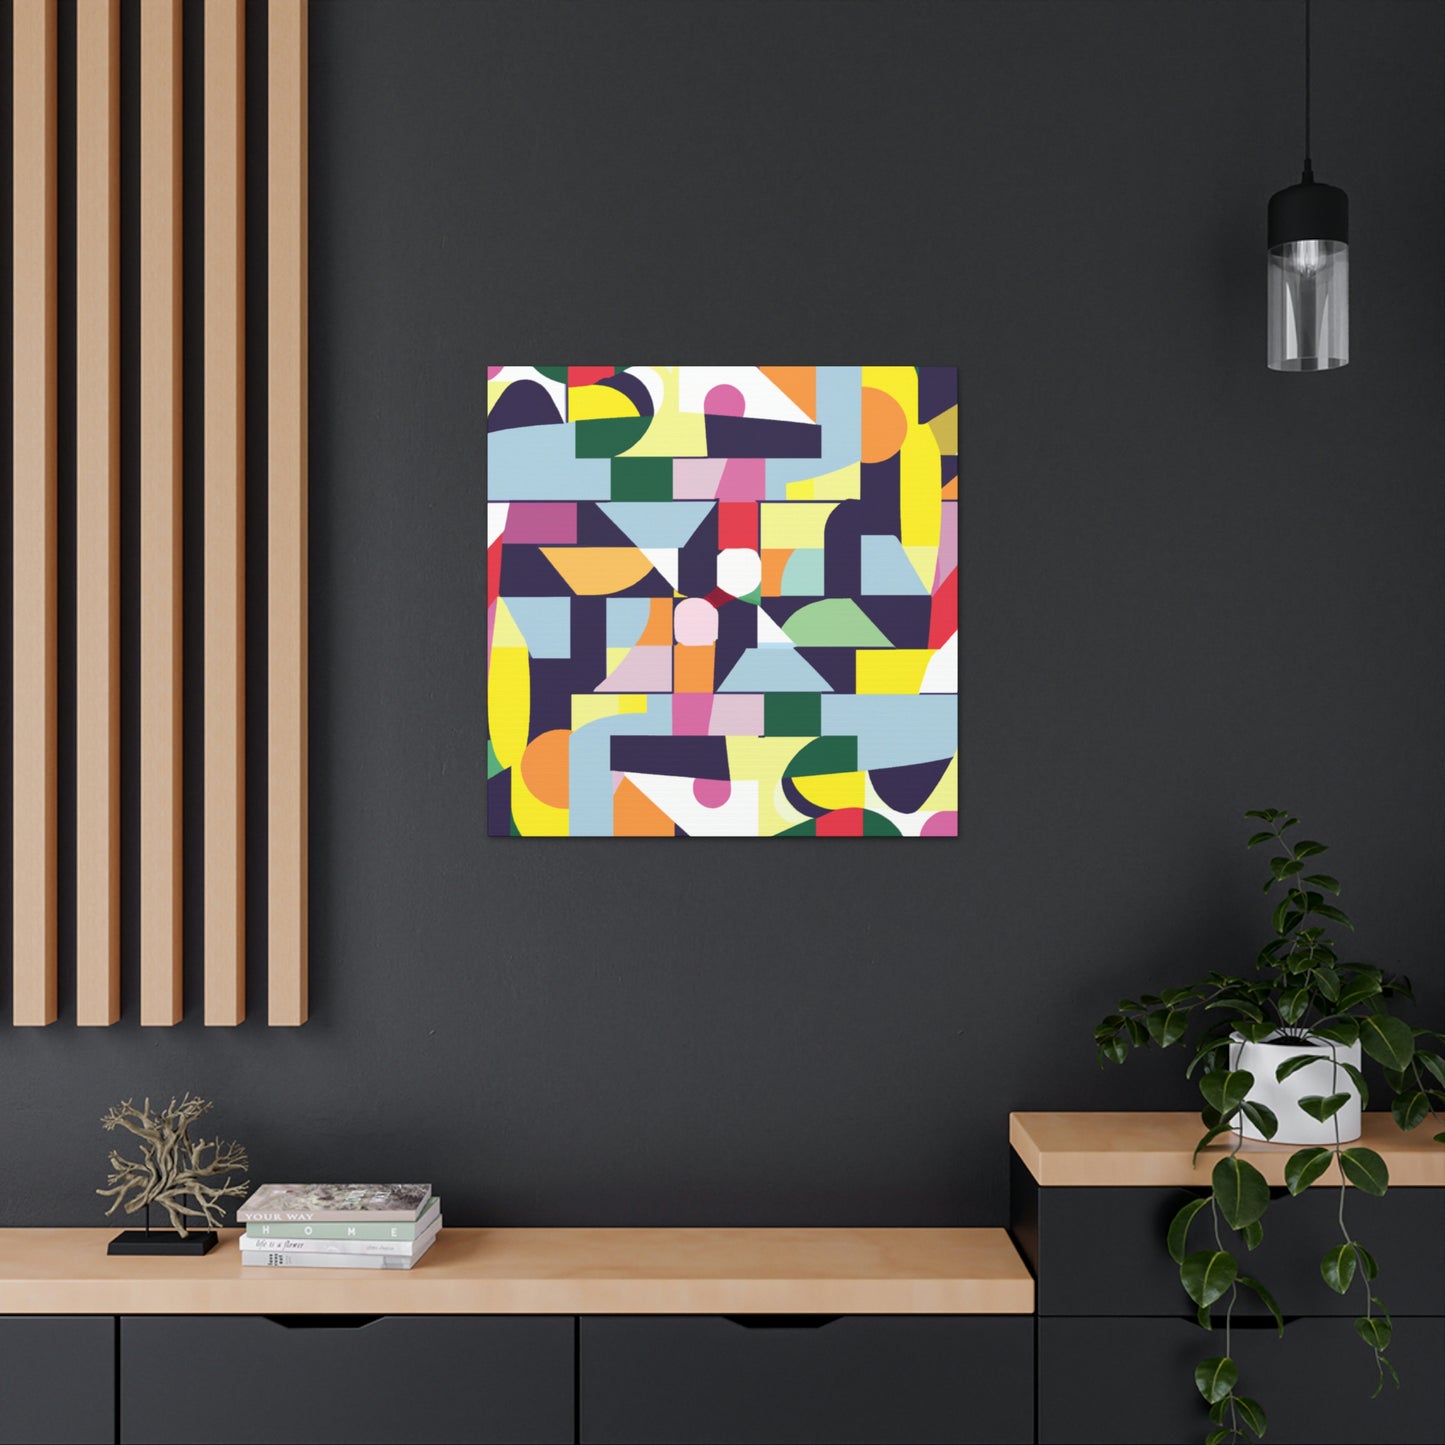 Luthera Appleby - Geometric Canvas Wall Art